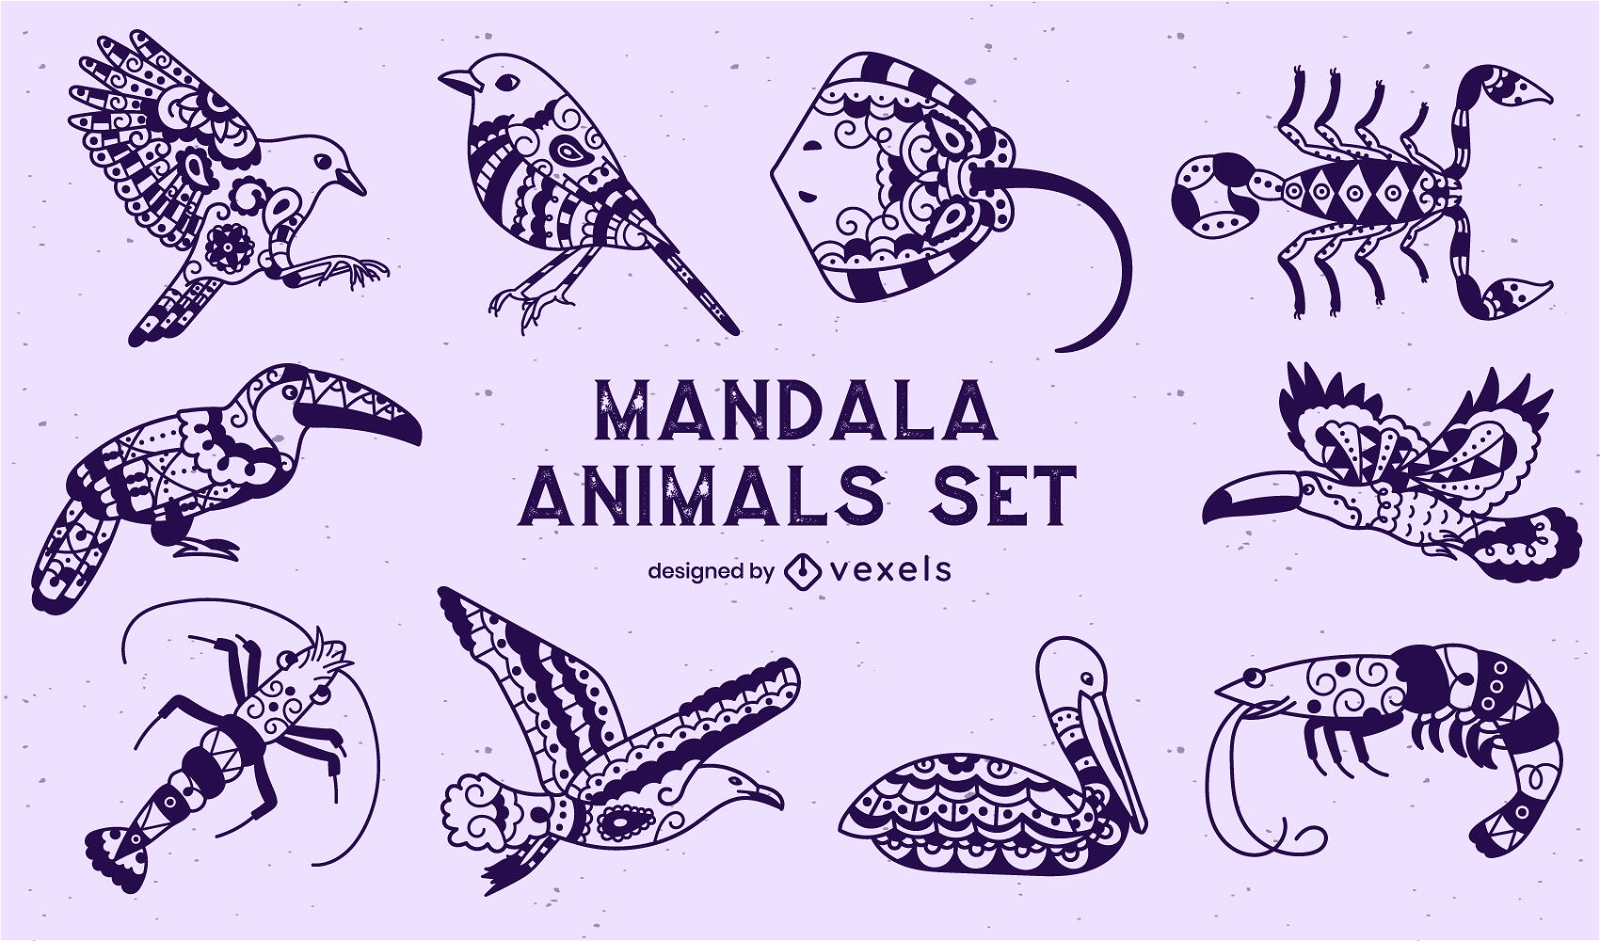 Set of animals in mandala style